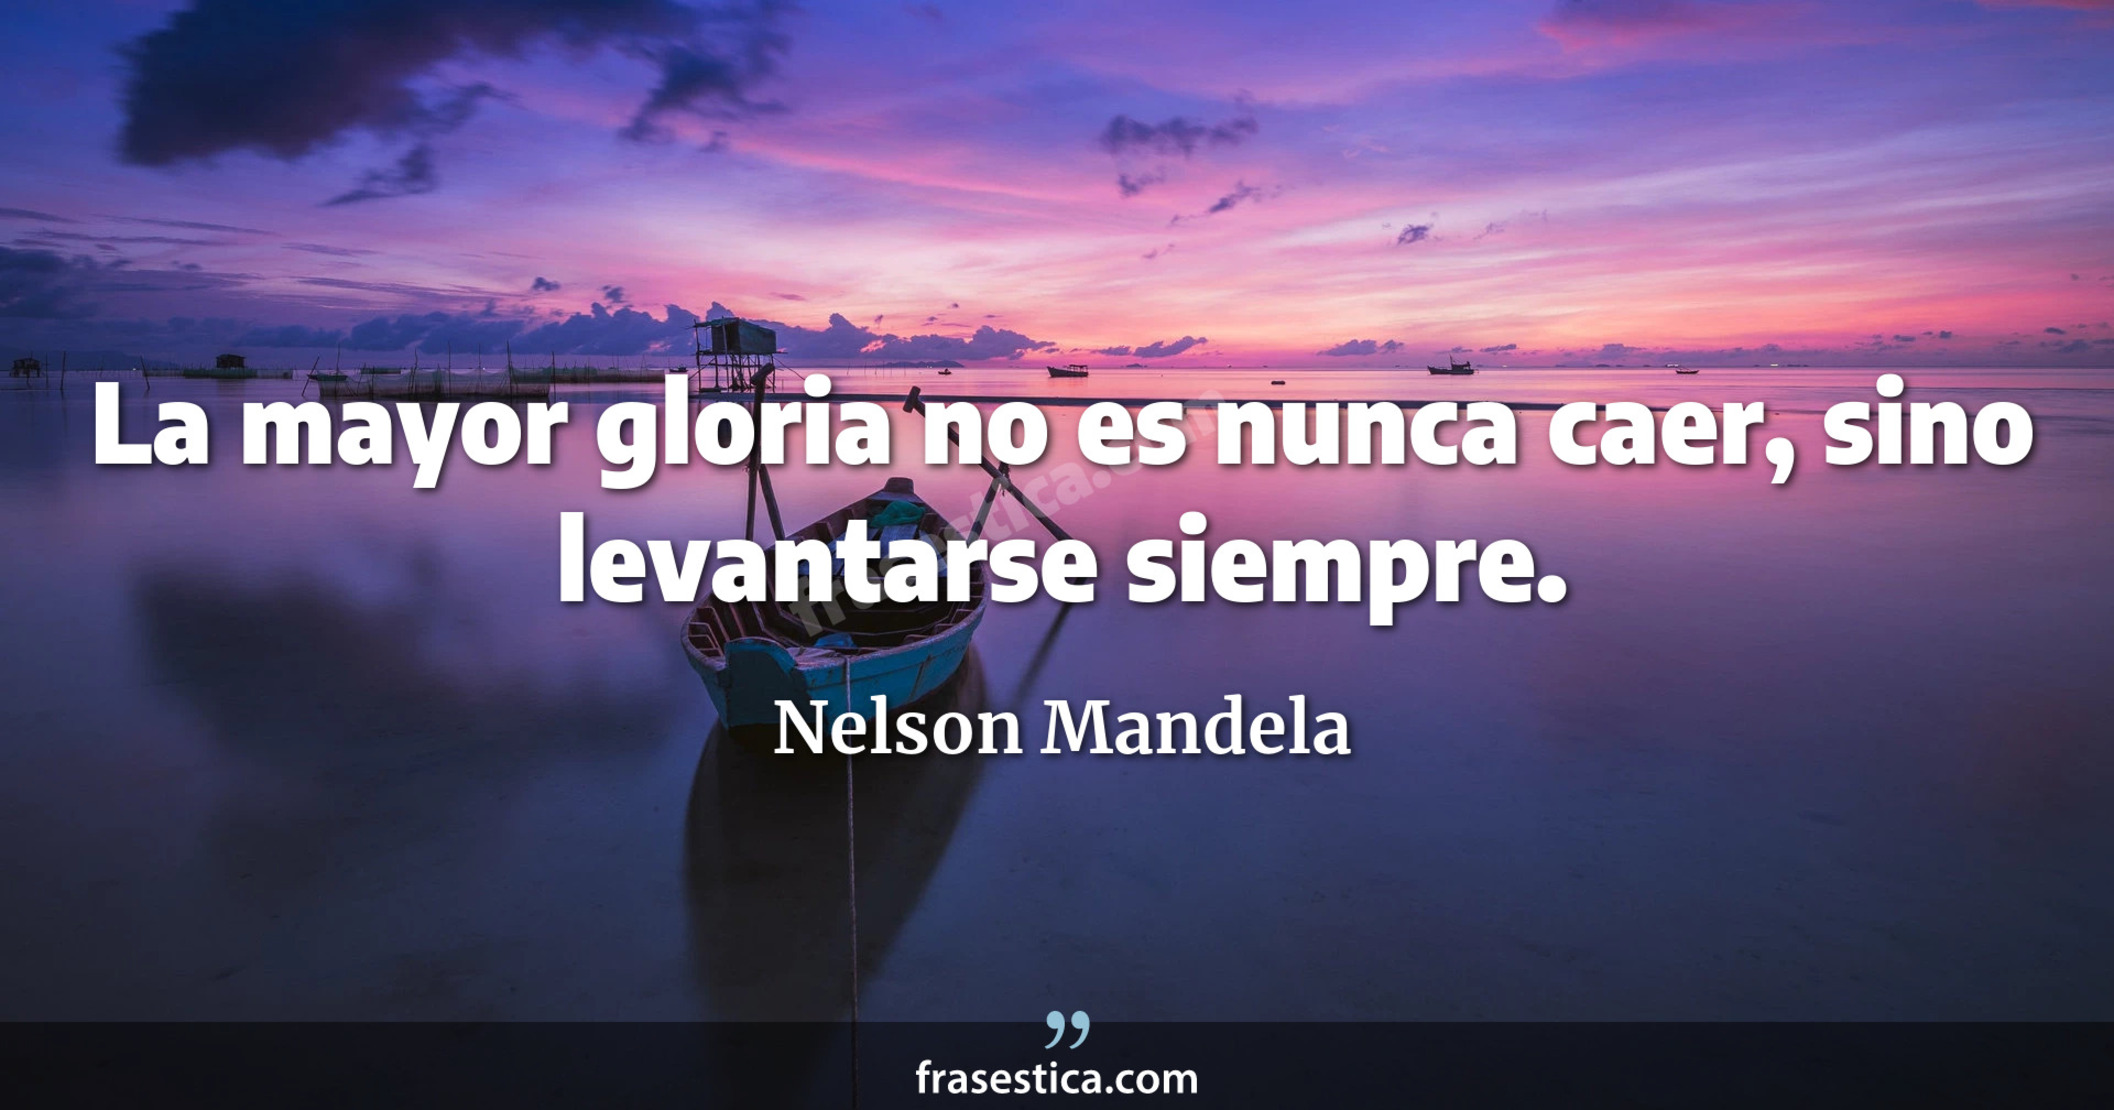 La mayor gloria no es nunca caer, sino levantarse siempre. - Nelson Mandela